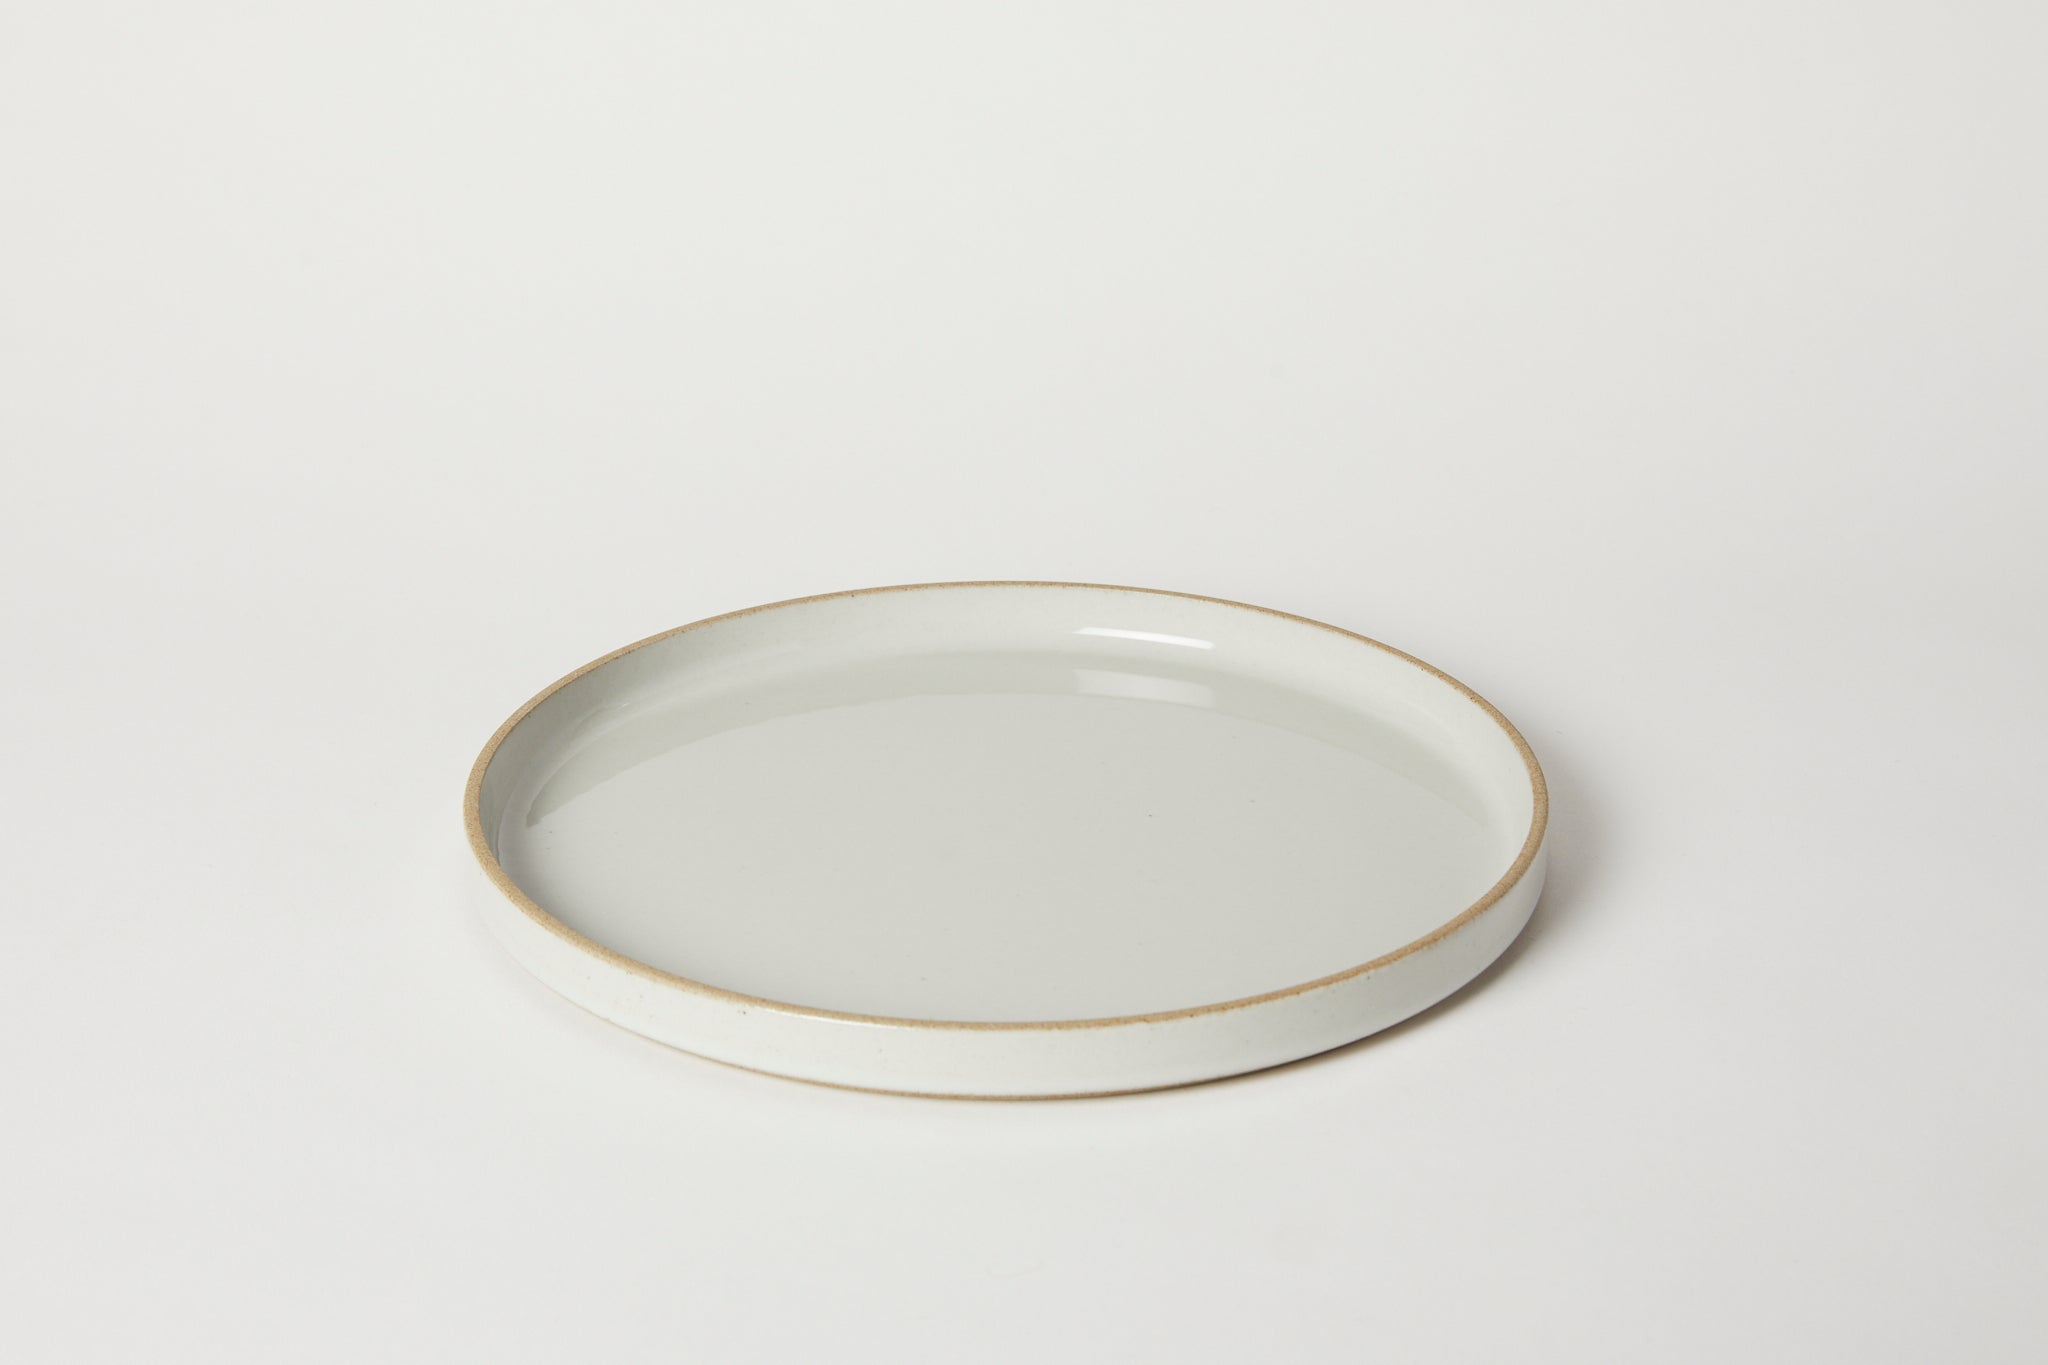 Hasami Porcelain Plates Grey, Tableware